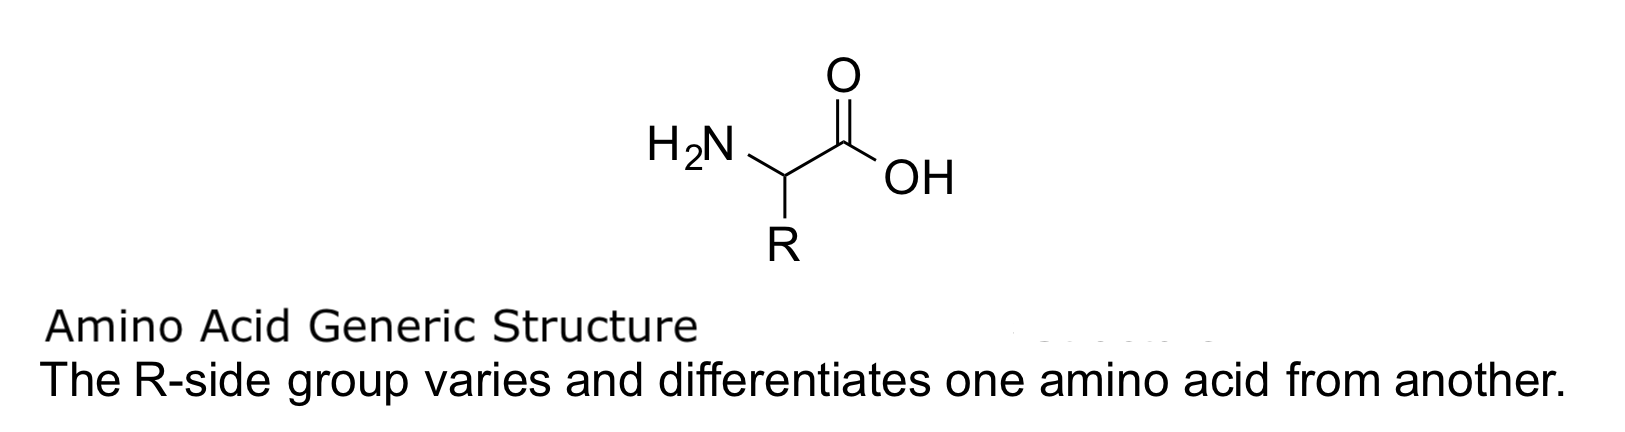 Amino acid generic structure